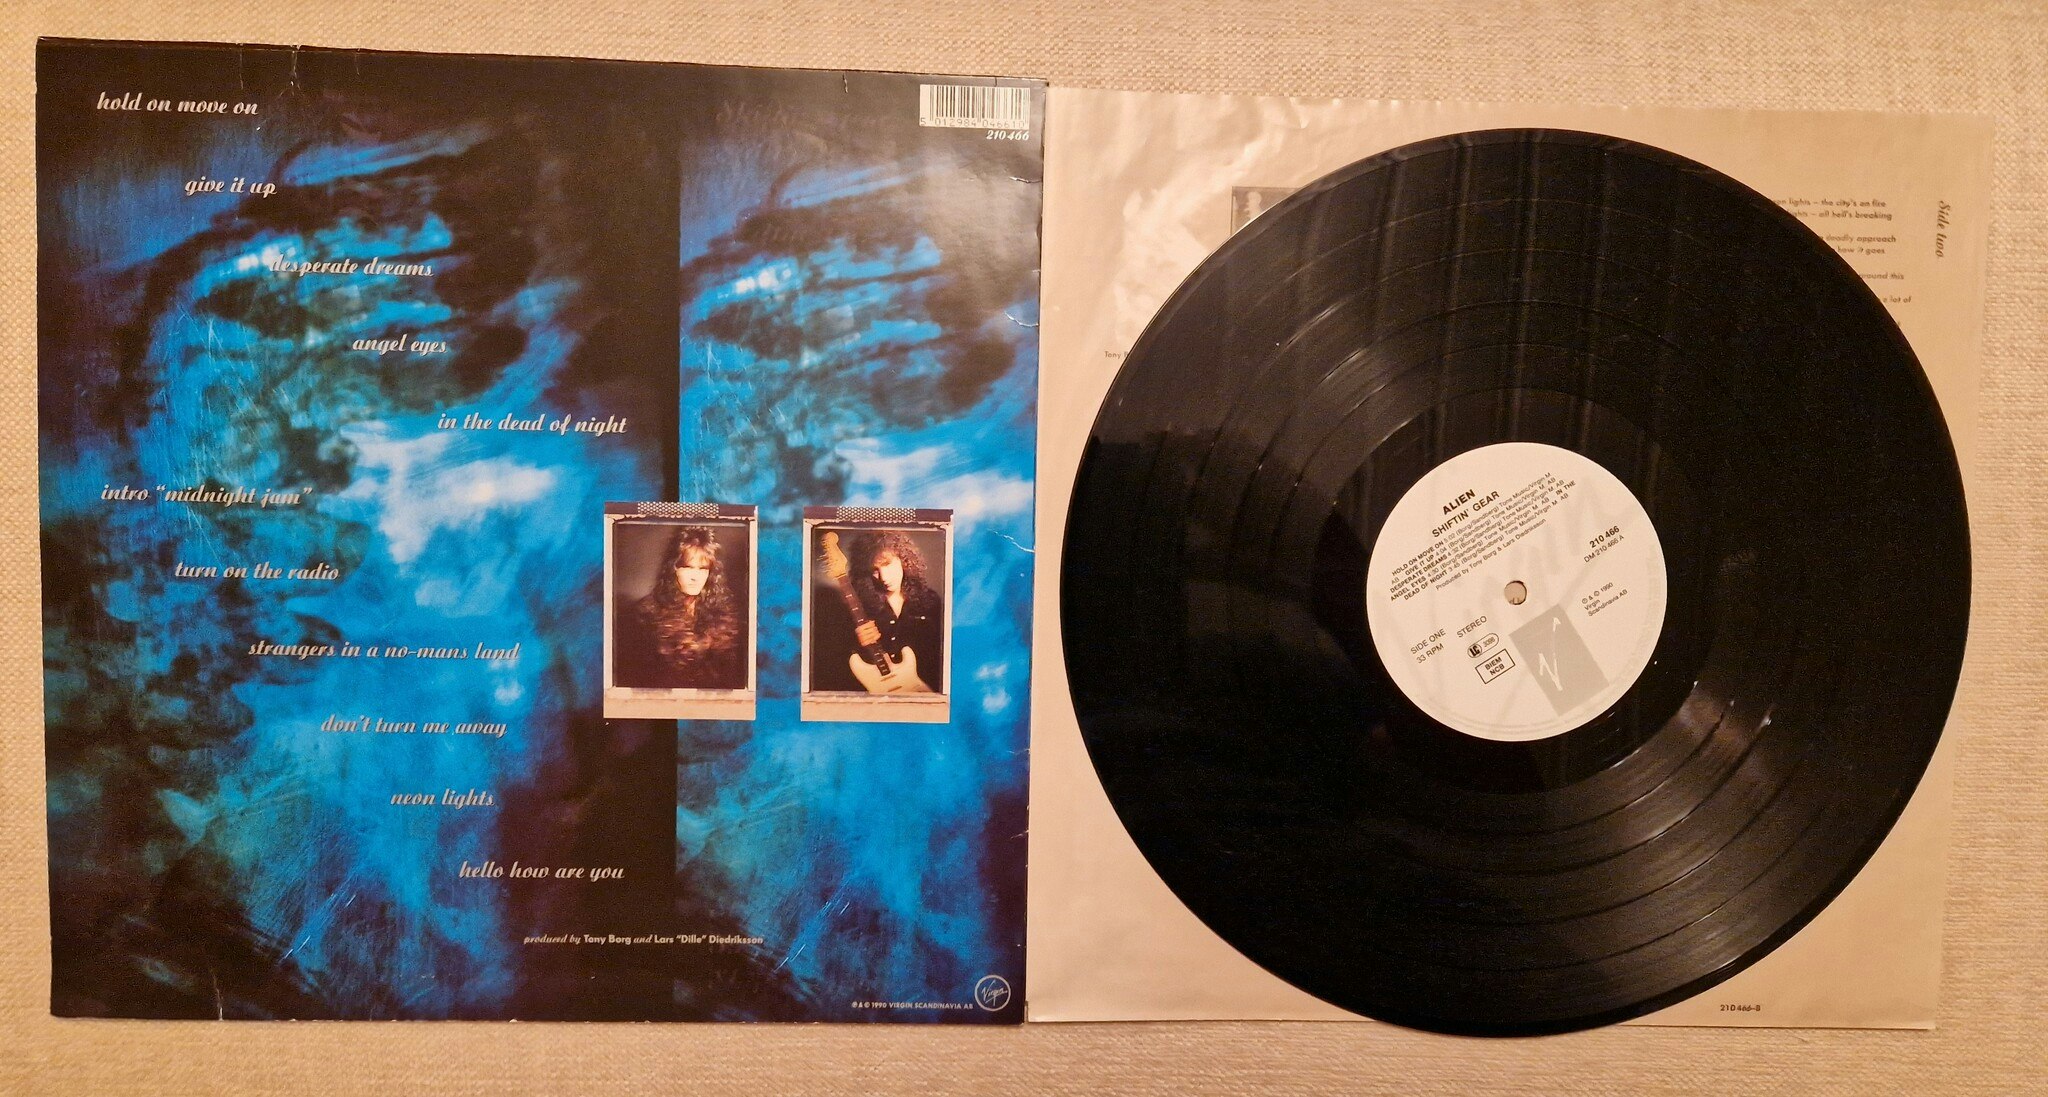 Alien, Shiftin gear. Vinyl LP